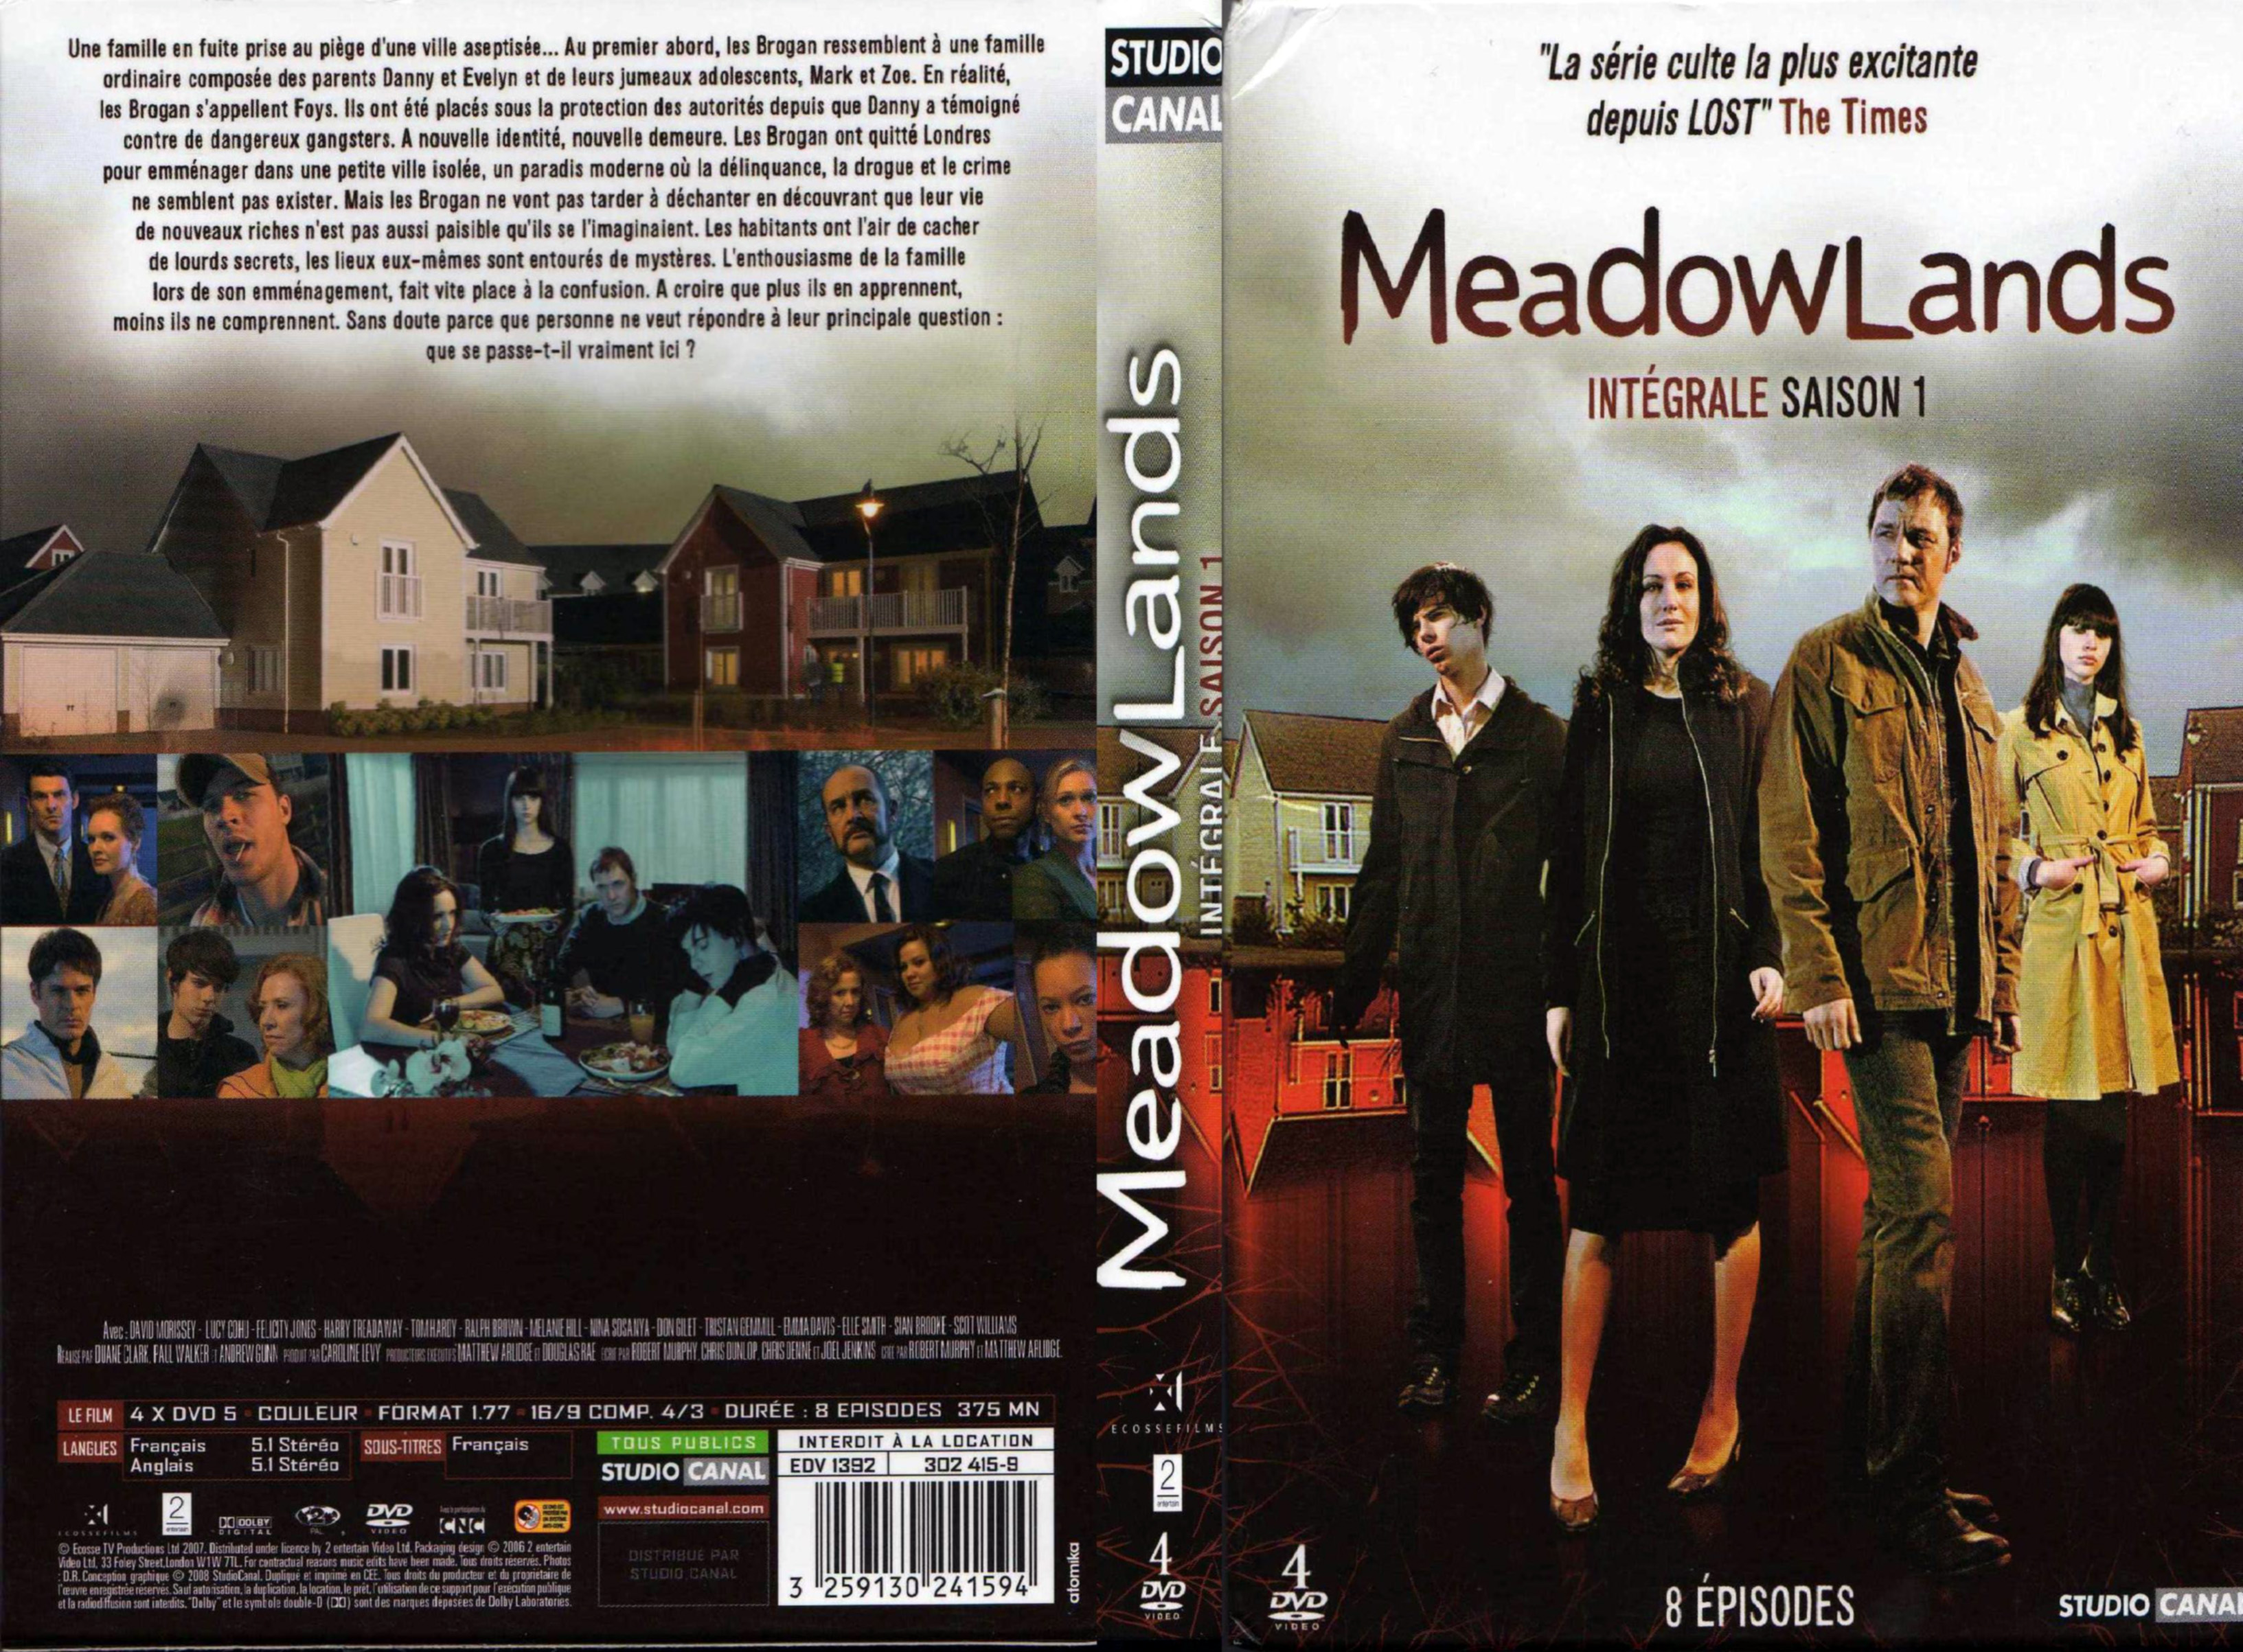 Jaquette DVD Meadowlands Saison 1 COFFRET